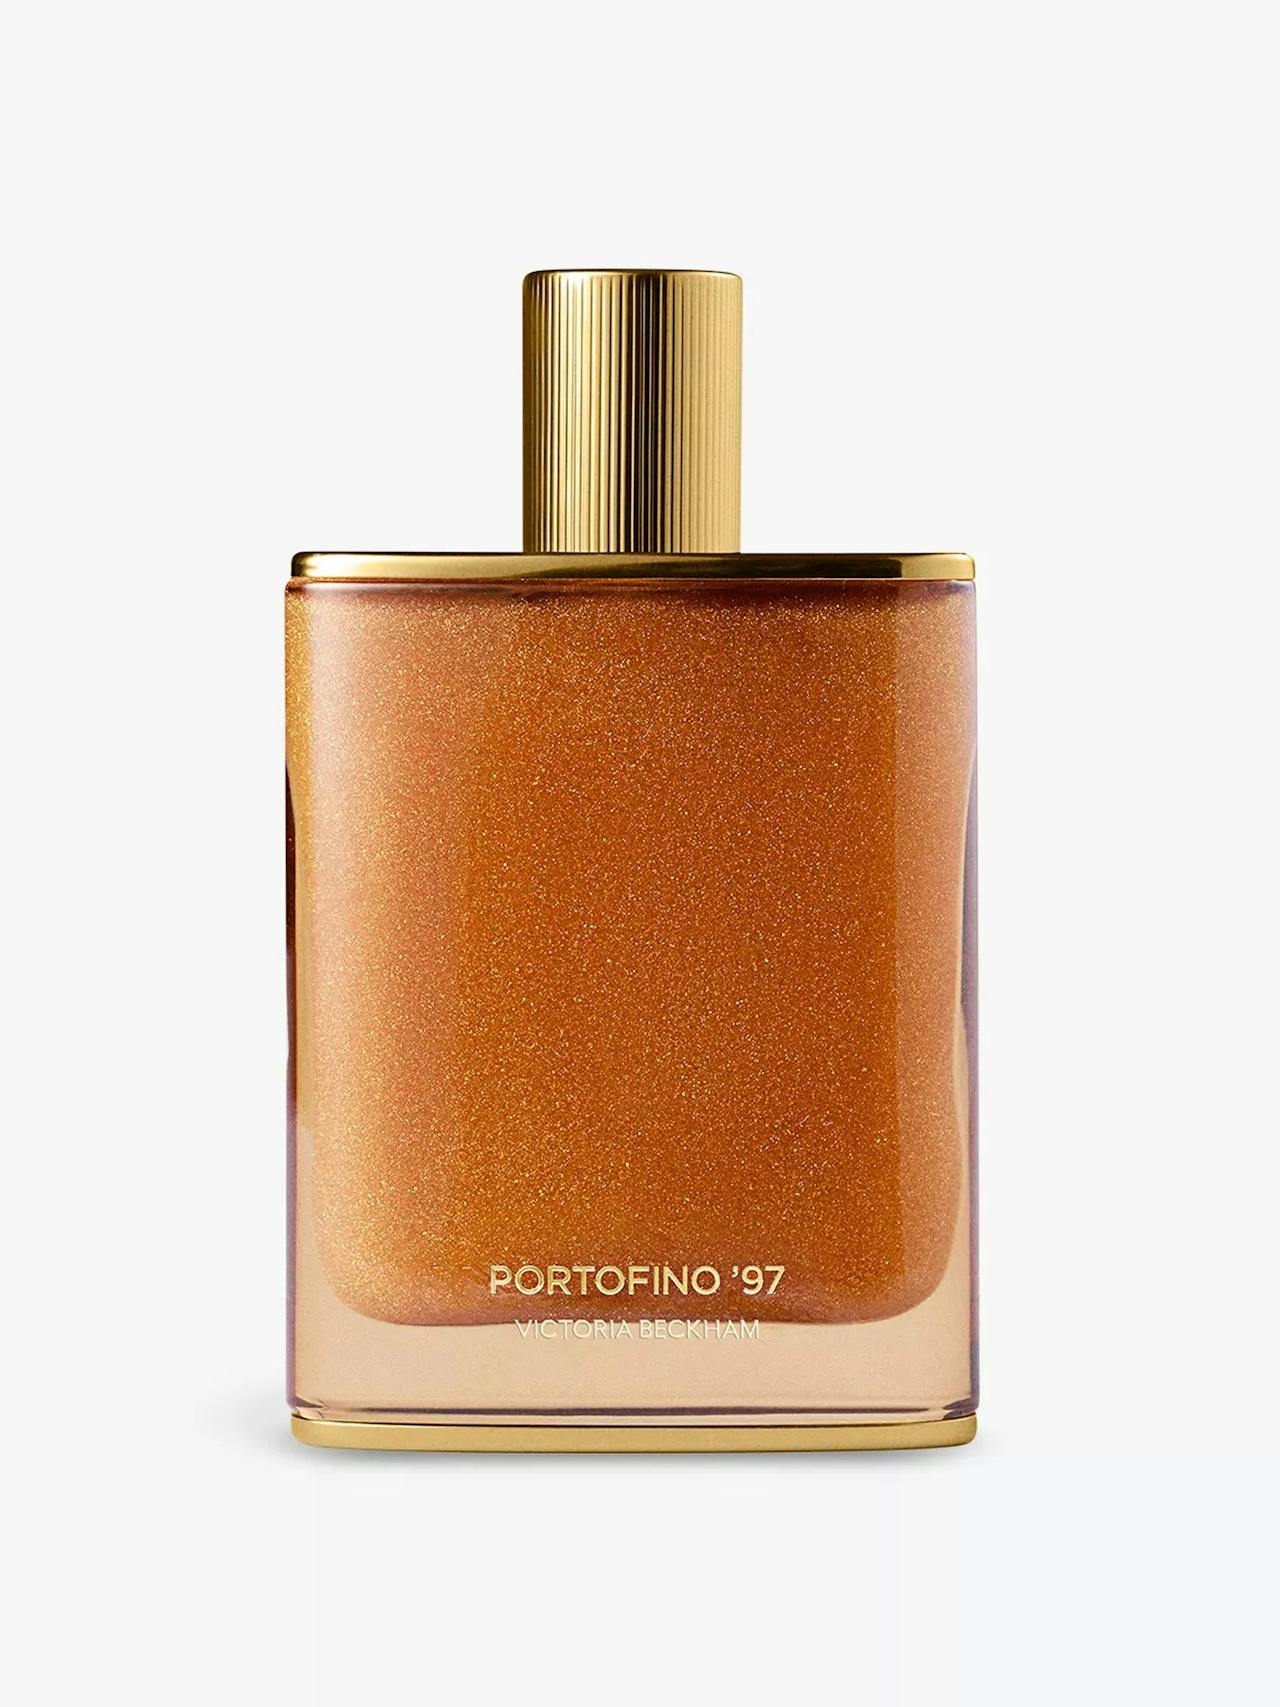 Portofino ’97 Golden Shimmer body oil